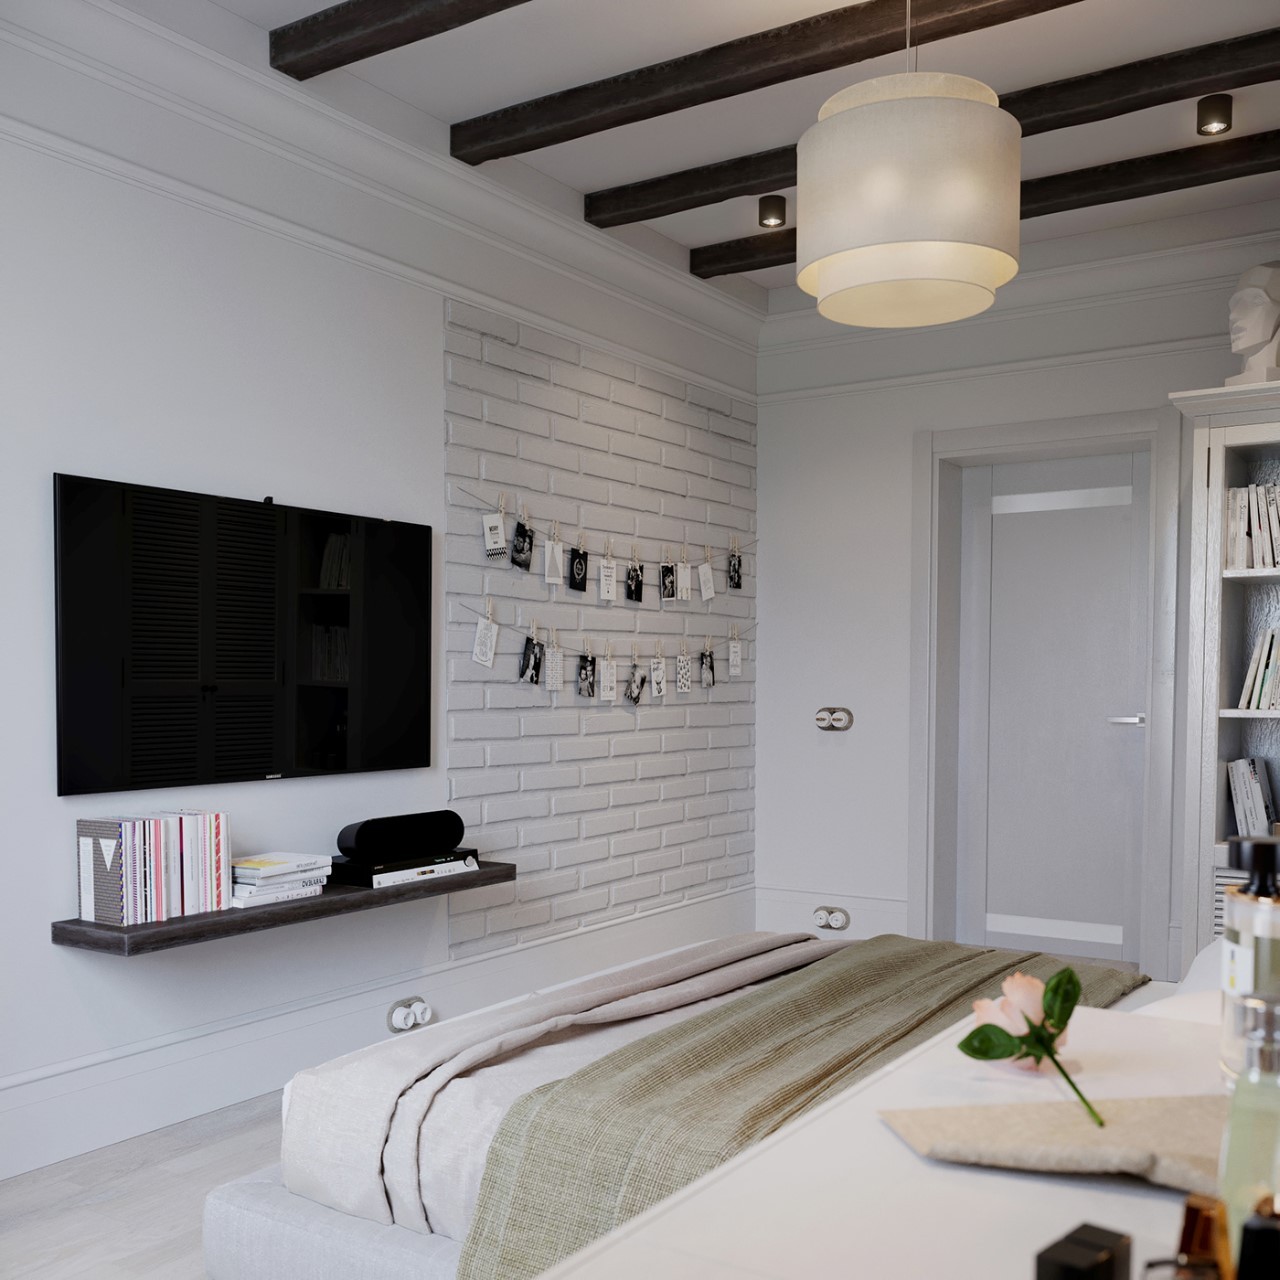 Tivi treo tường giúp tiết kiệm diện tích cho ăn phòng ngủ nhỏ